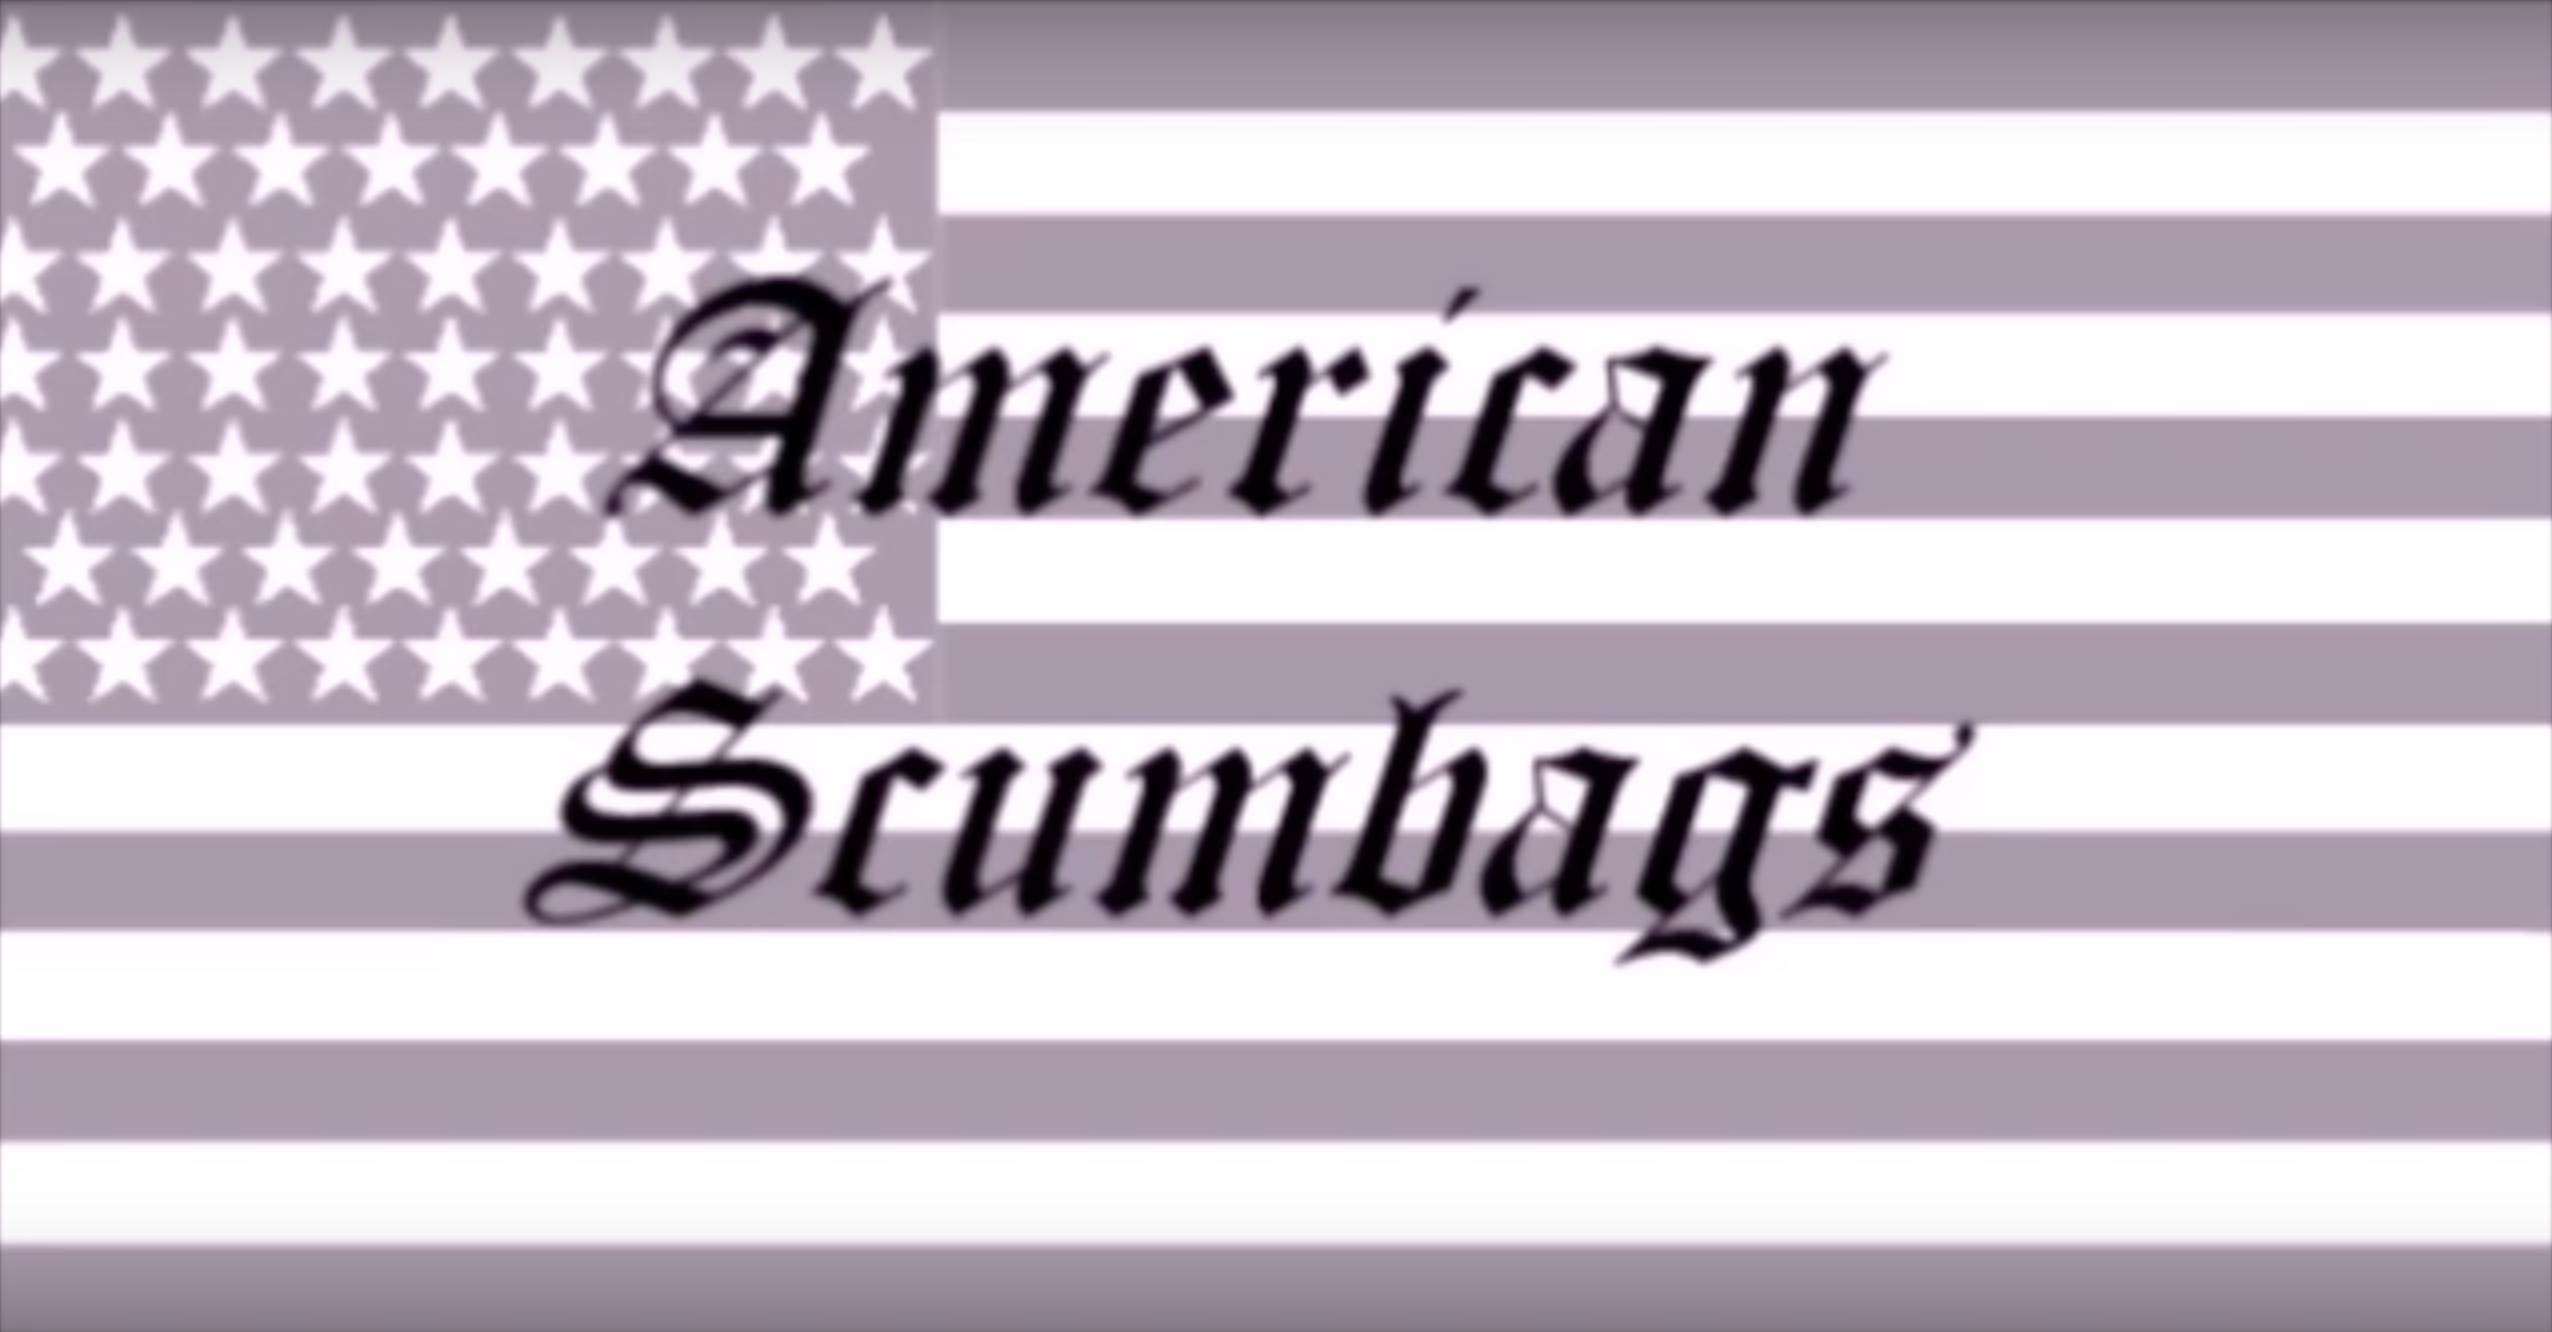 Reel Review: American Scumbags